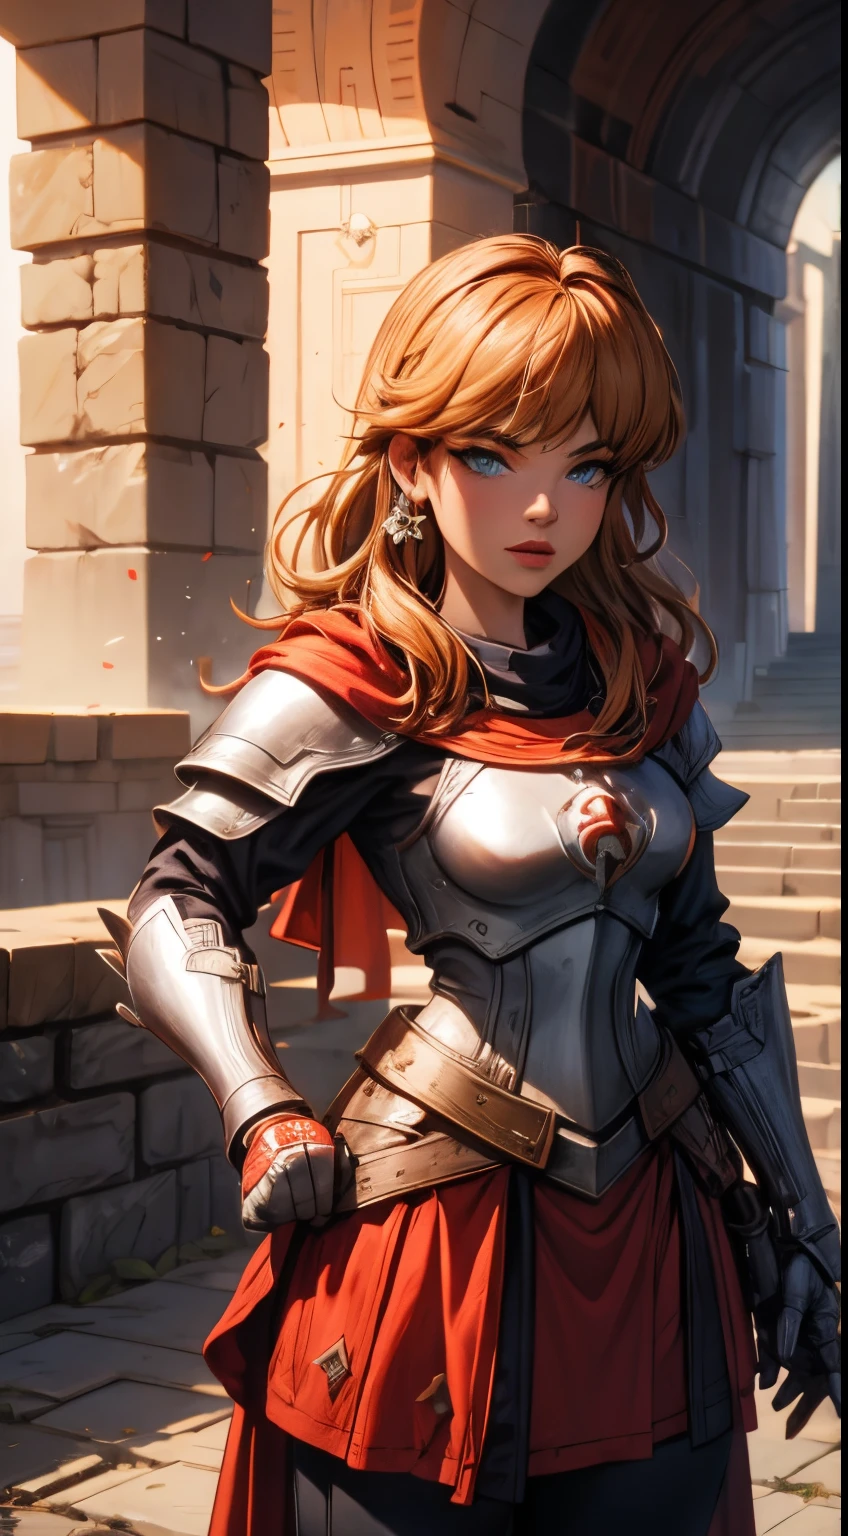 Súper chica medieval con armadura de temática templaria